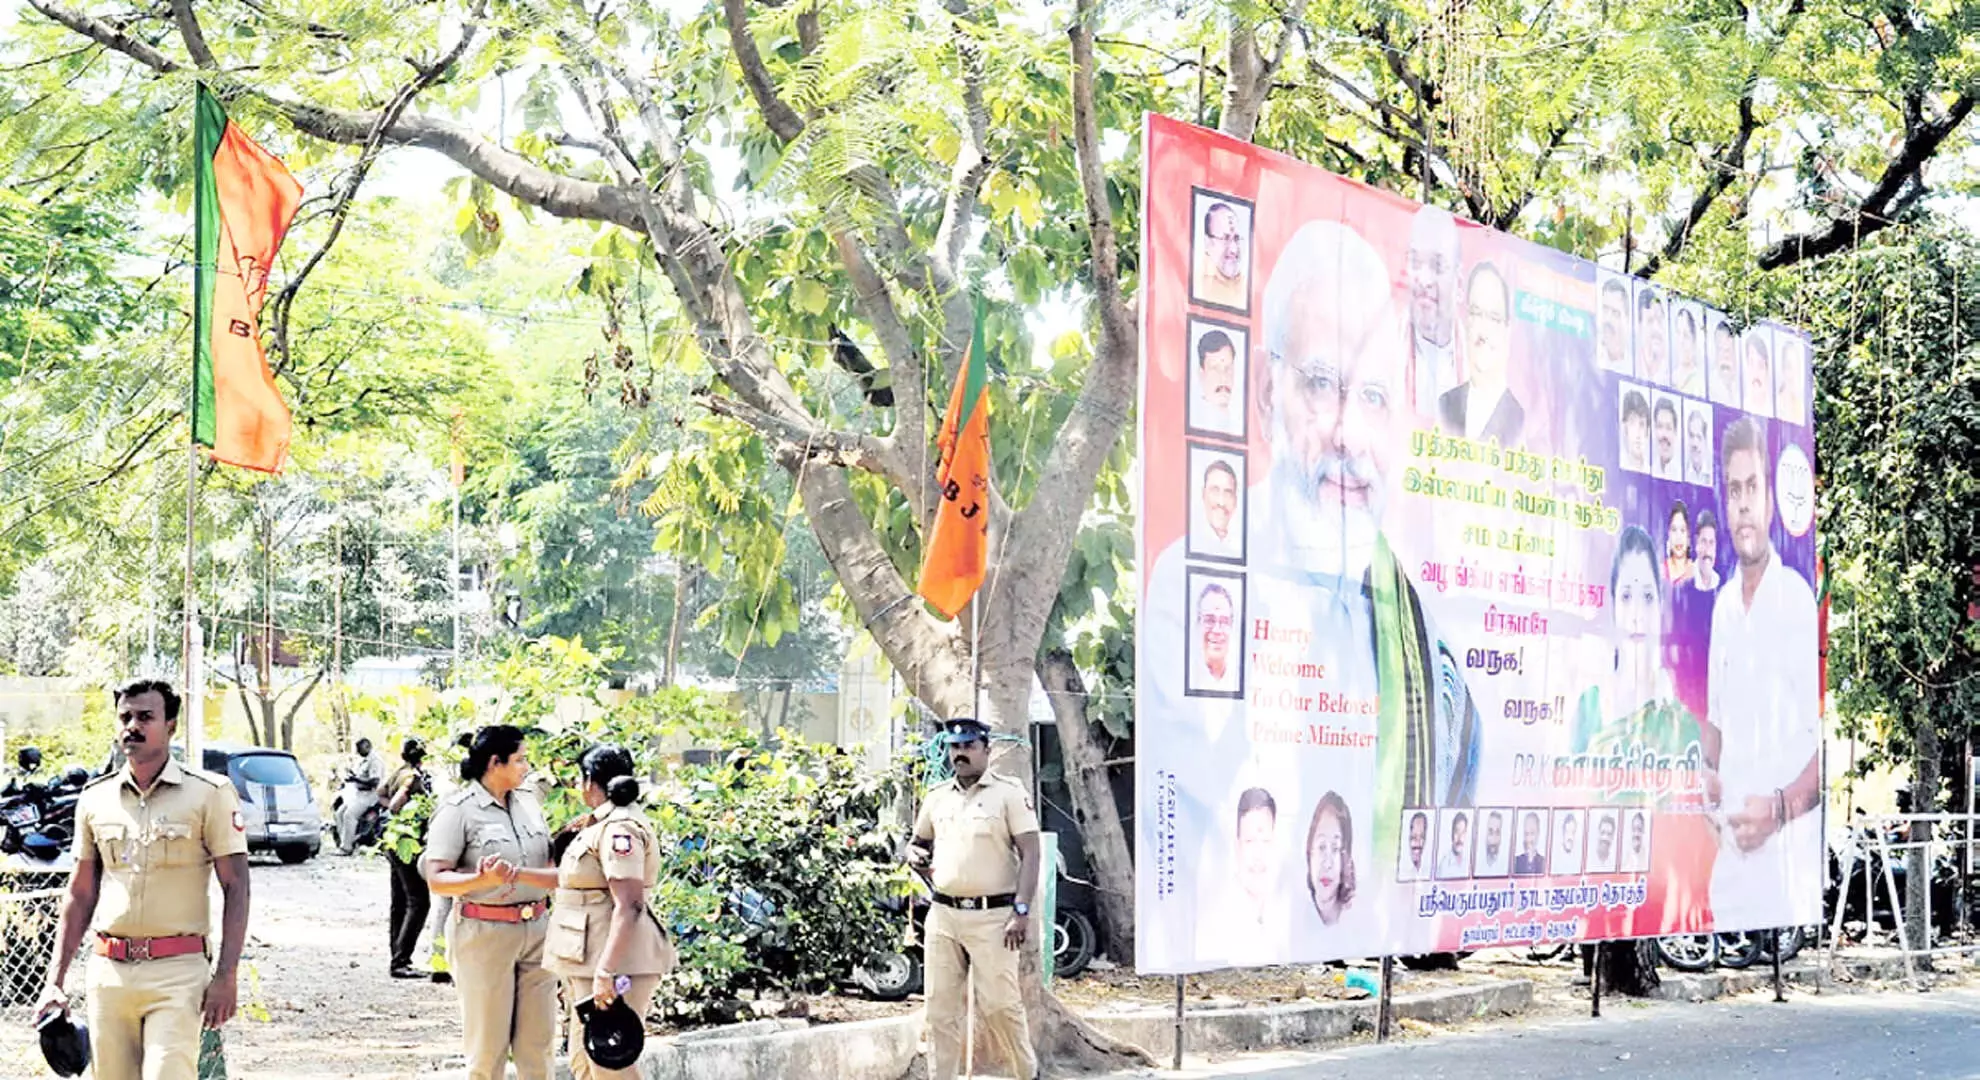 पीएम मोदी का चेन्नई दौरा: 15,000 पुलिसकर्मियों के साथ पांच स्तरीय सुरक्षा